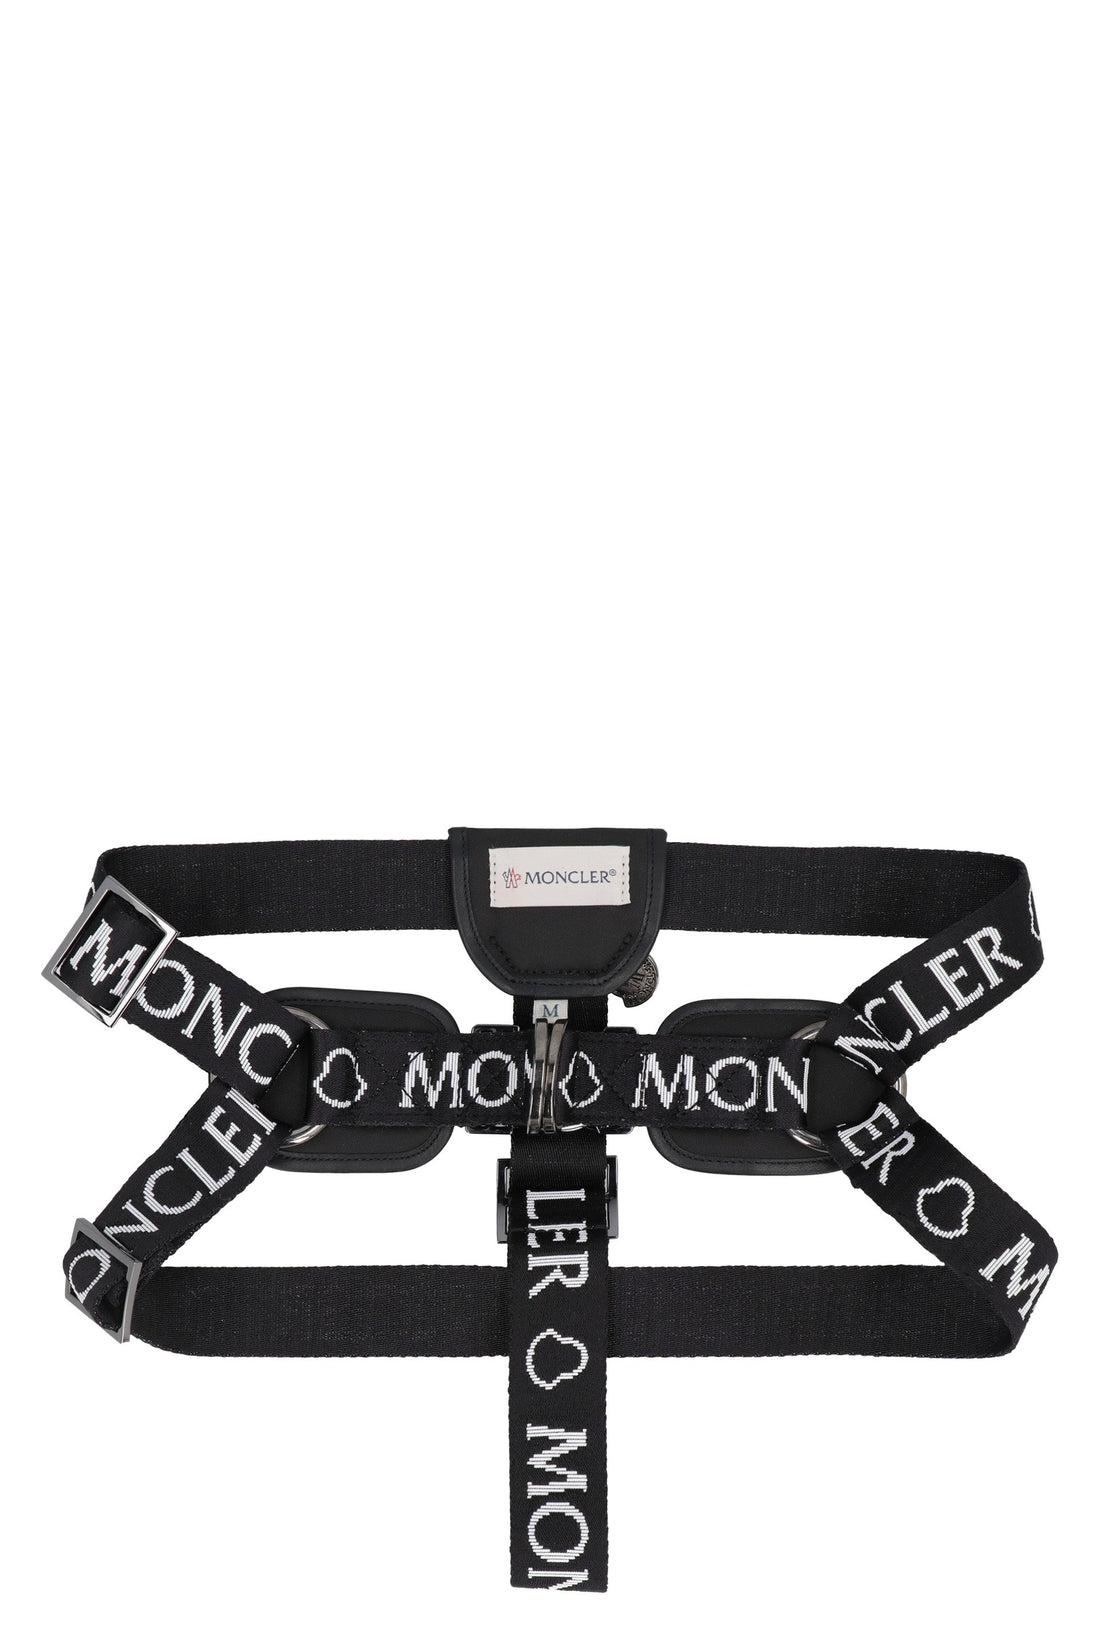 Moncler Genius-OUTLET-SALE-Moncler Poldo Dog Couture - Logo harness-ARCHIVIST